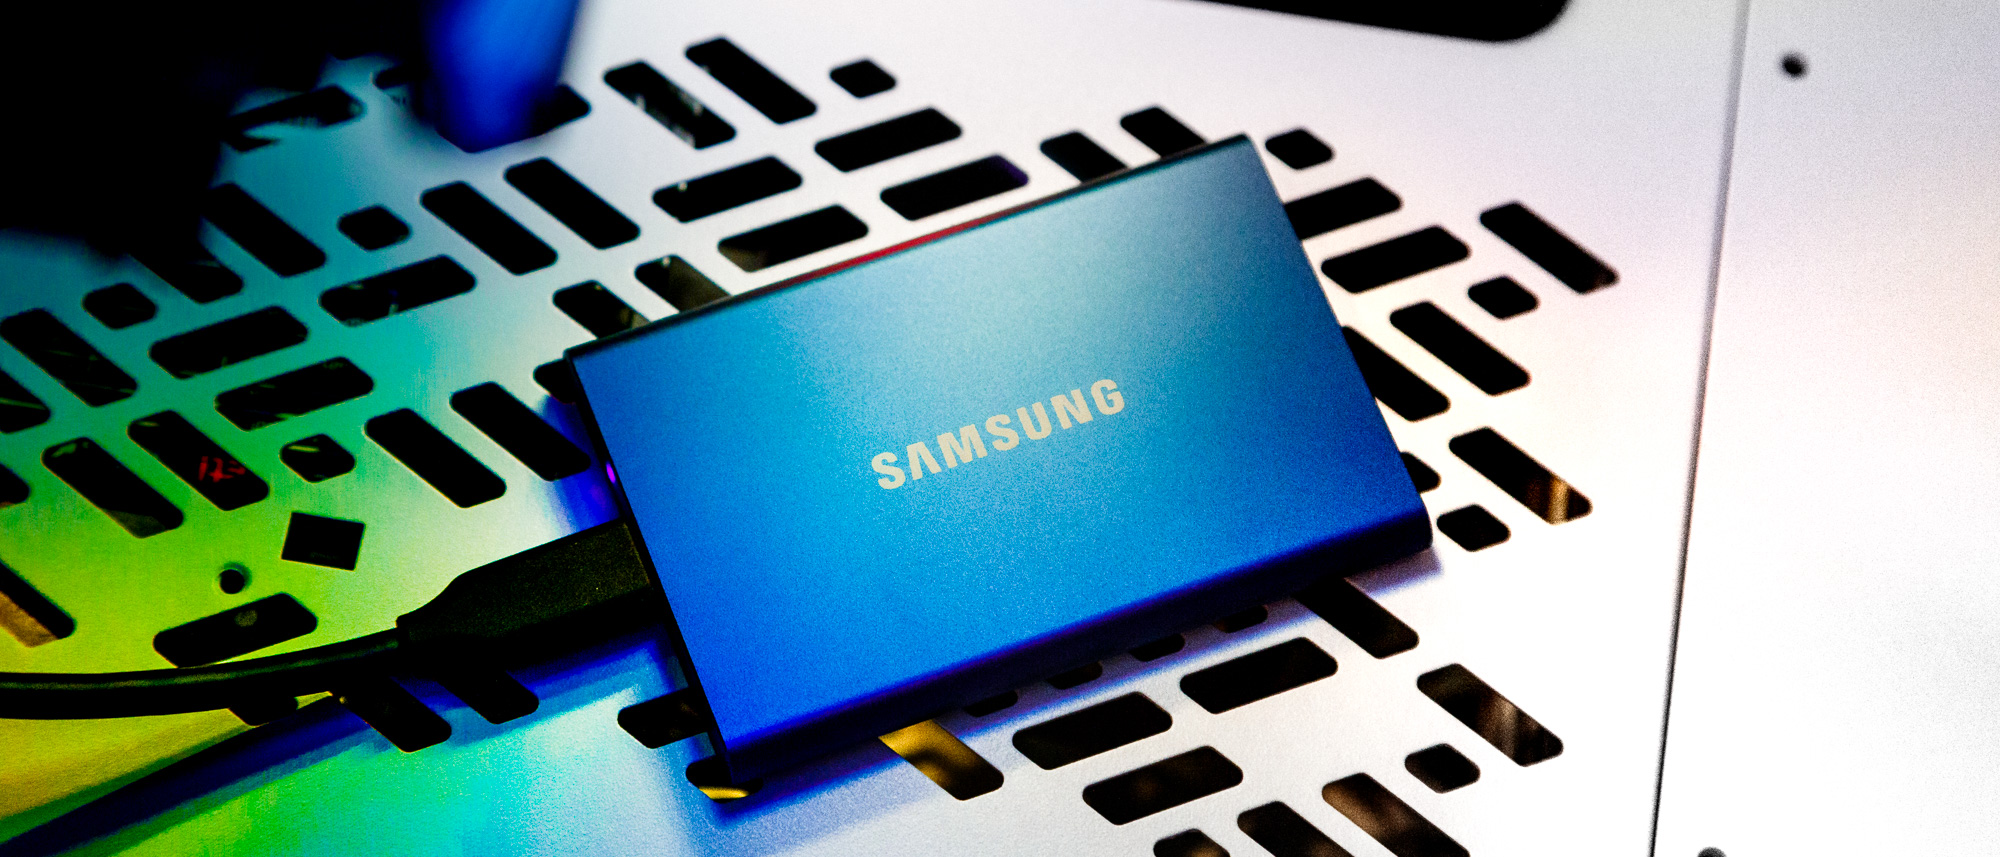 Samsung T7 Touch SSD Review - TechBuzzProTechBuzzPro